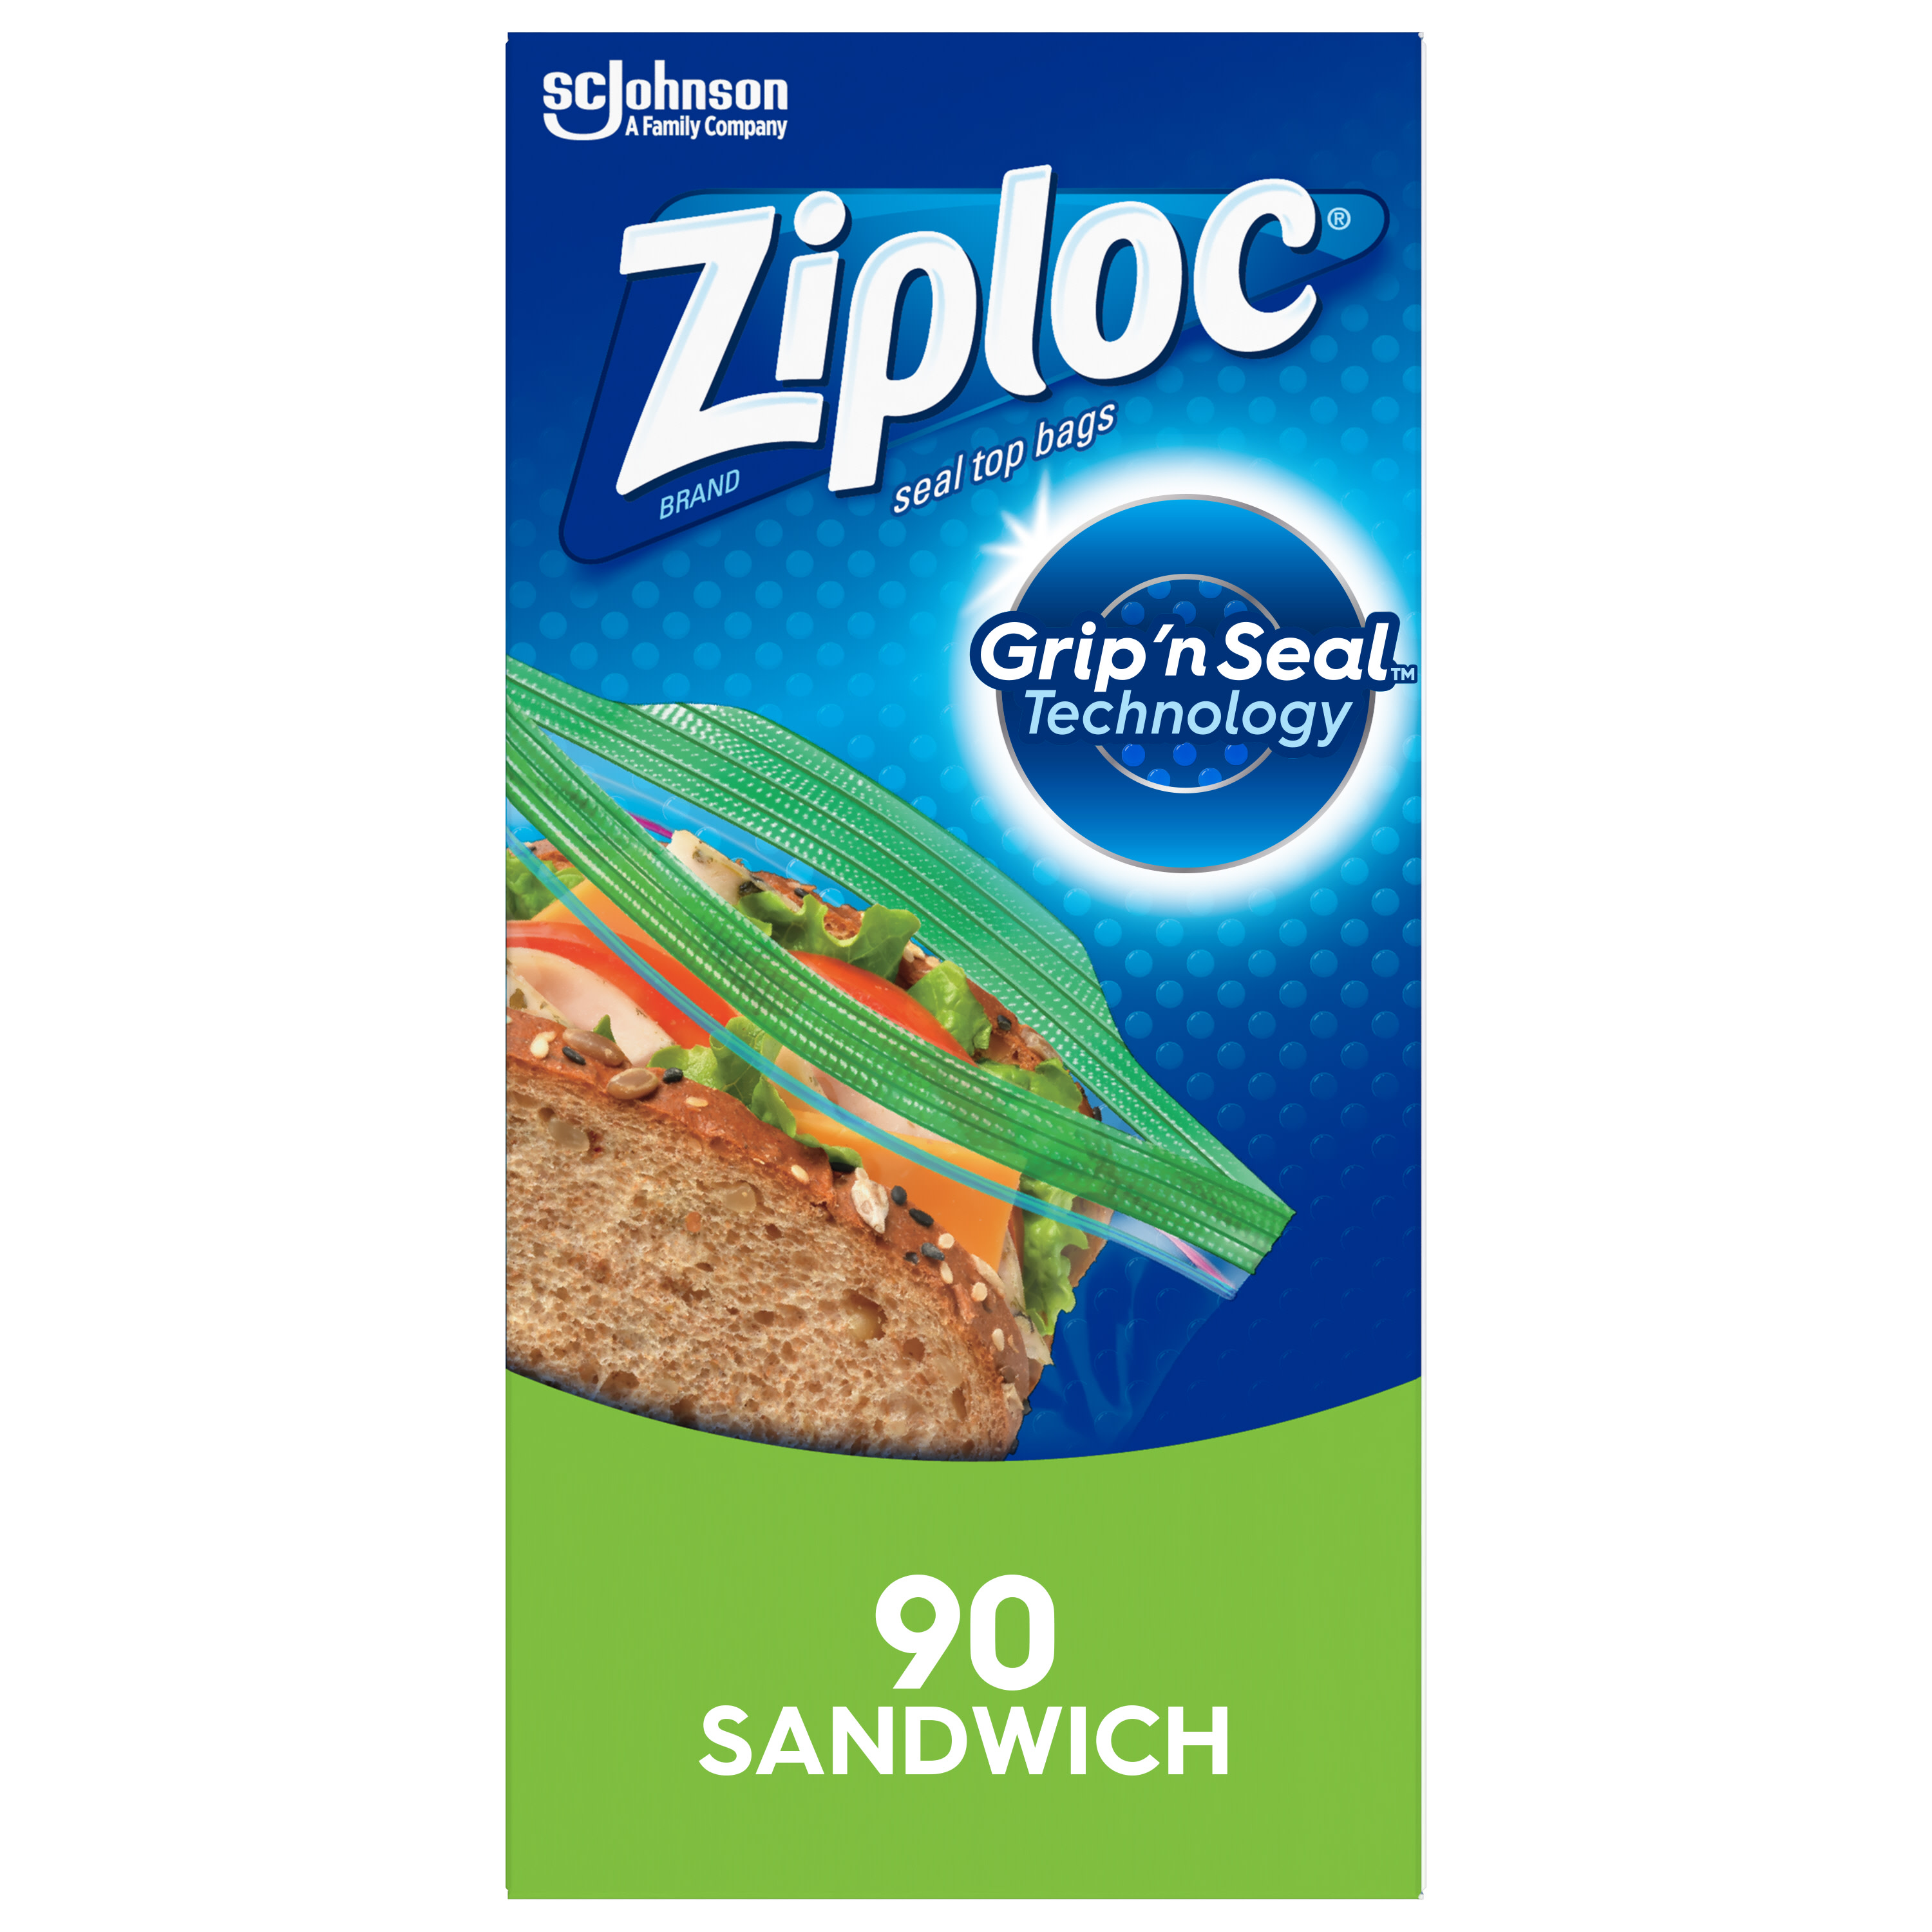 Ziploc® Brand Sandwich Bags, 90 Count - image 1 of 14